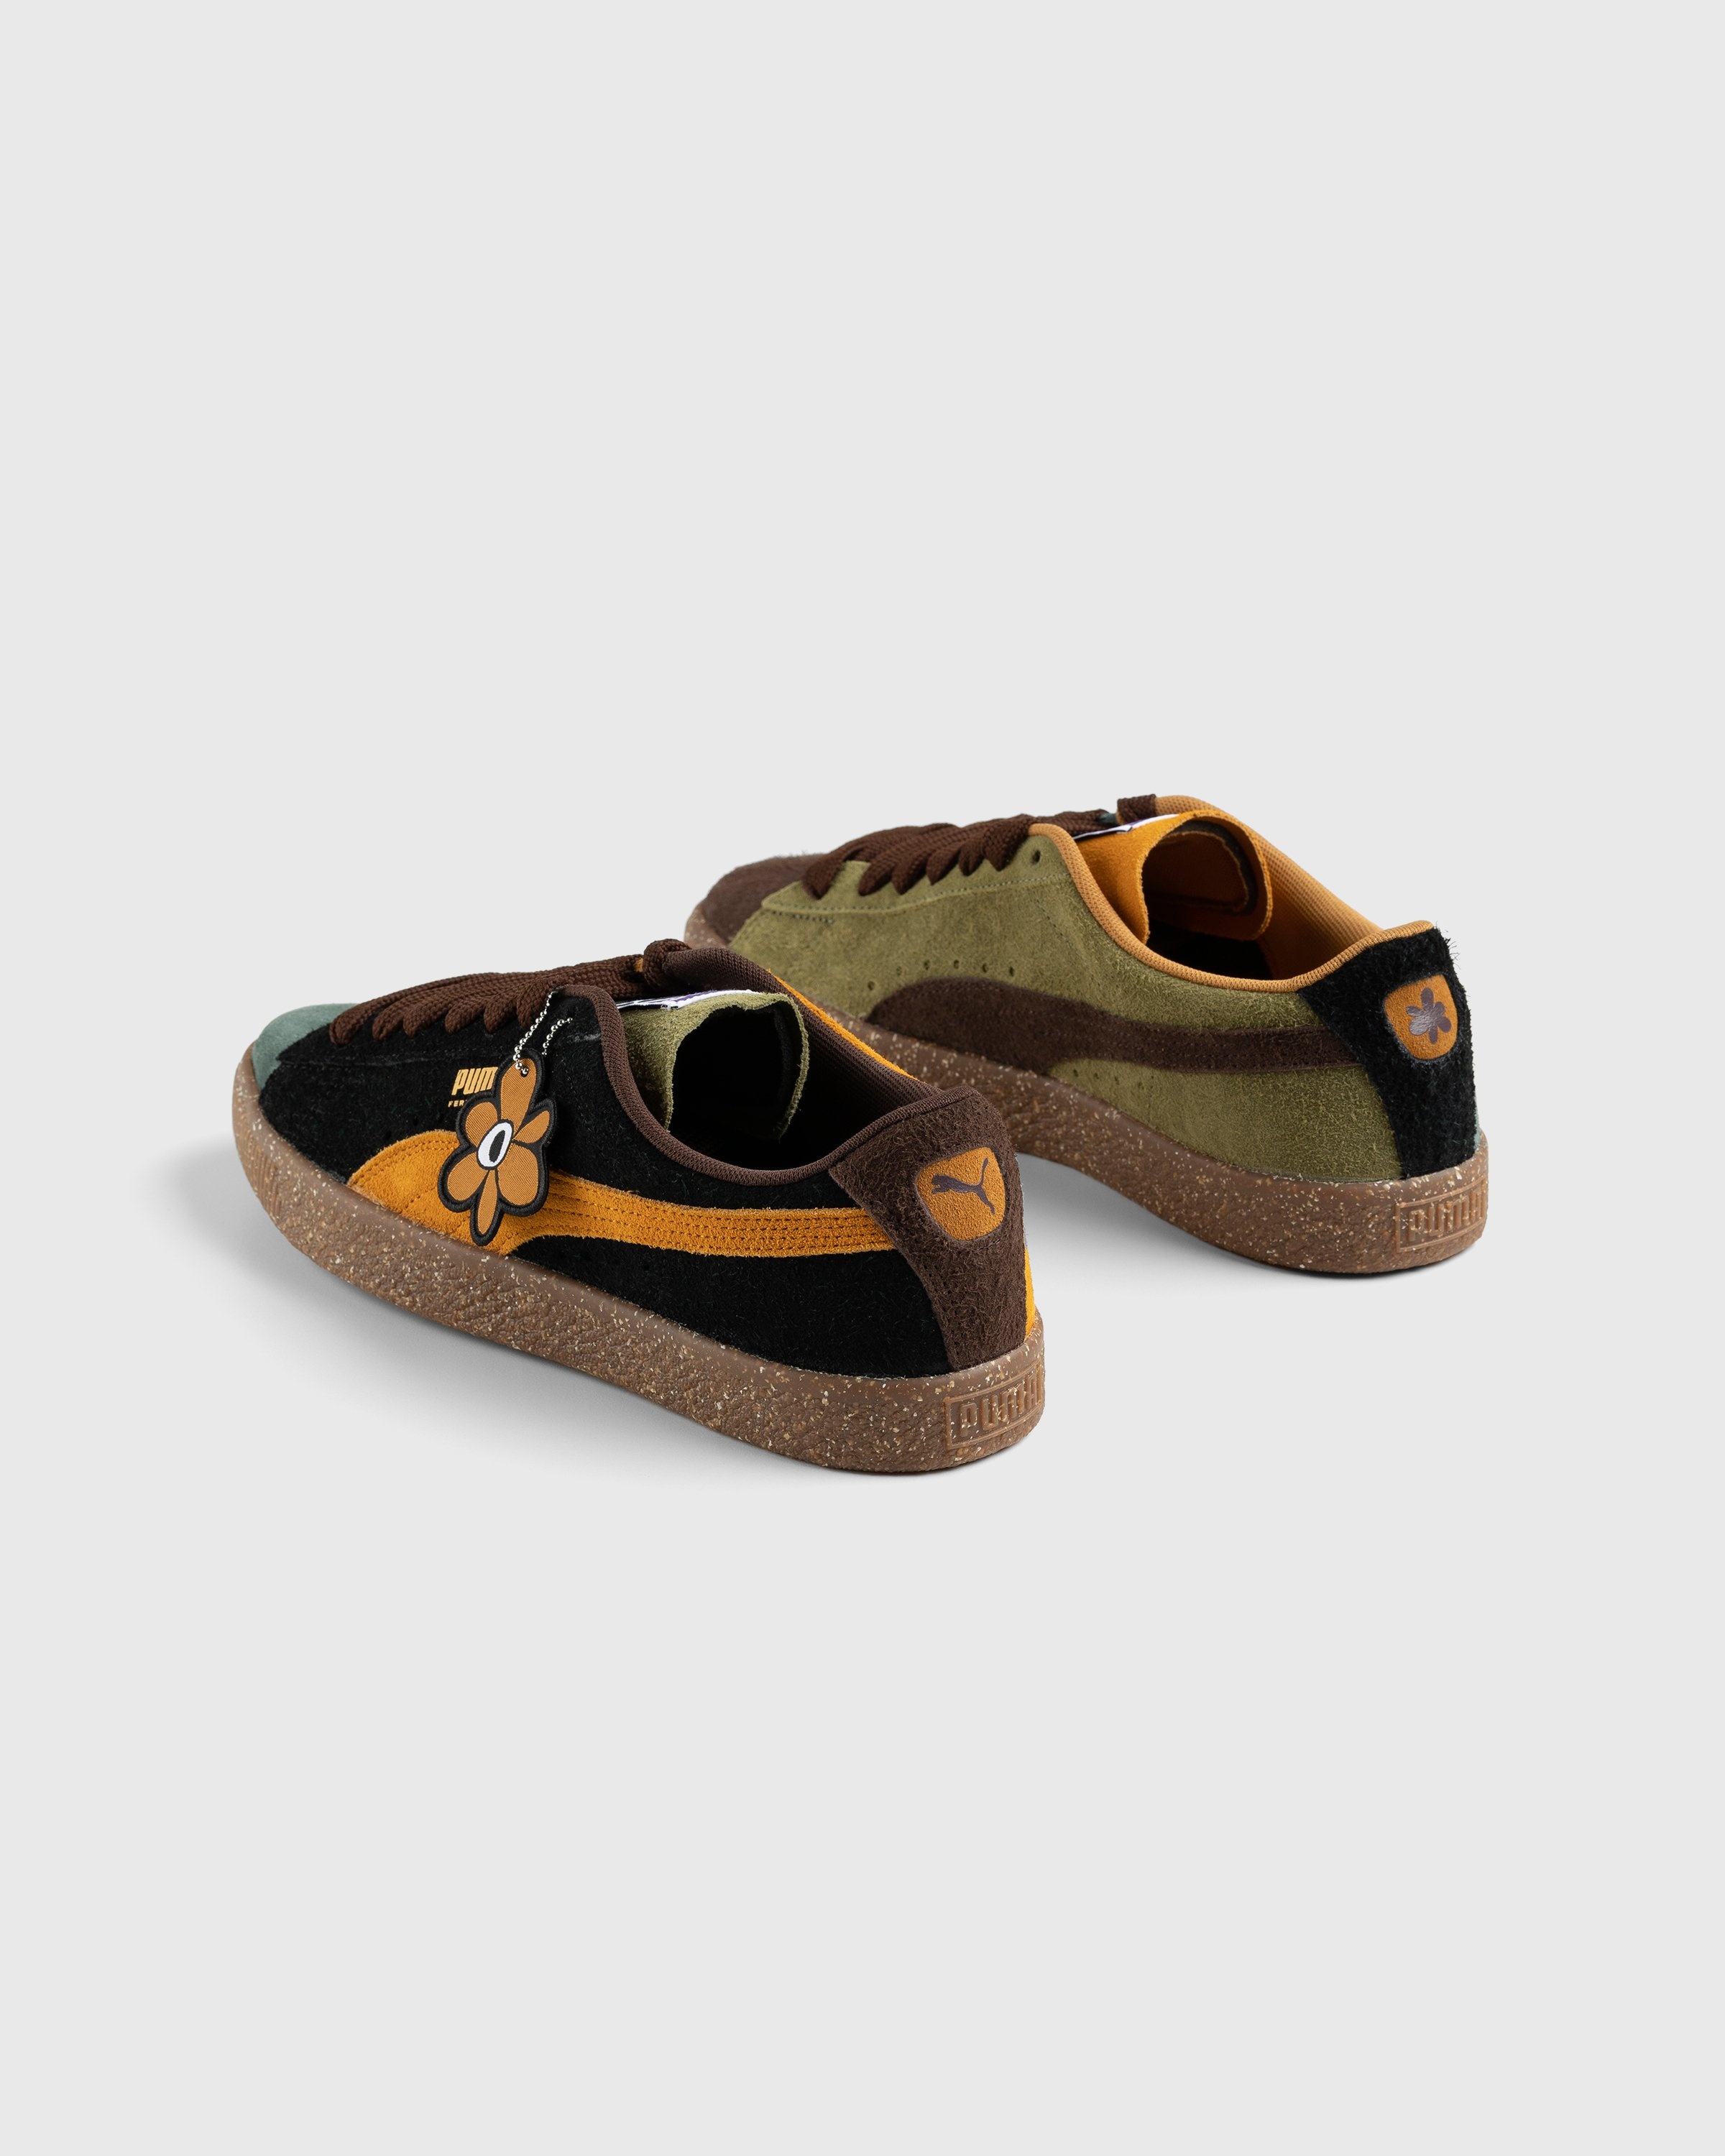 Puma x P.A.M. – Suede Vintage Brown - Low Top Sneakers - Brown - Image 4